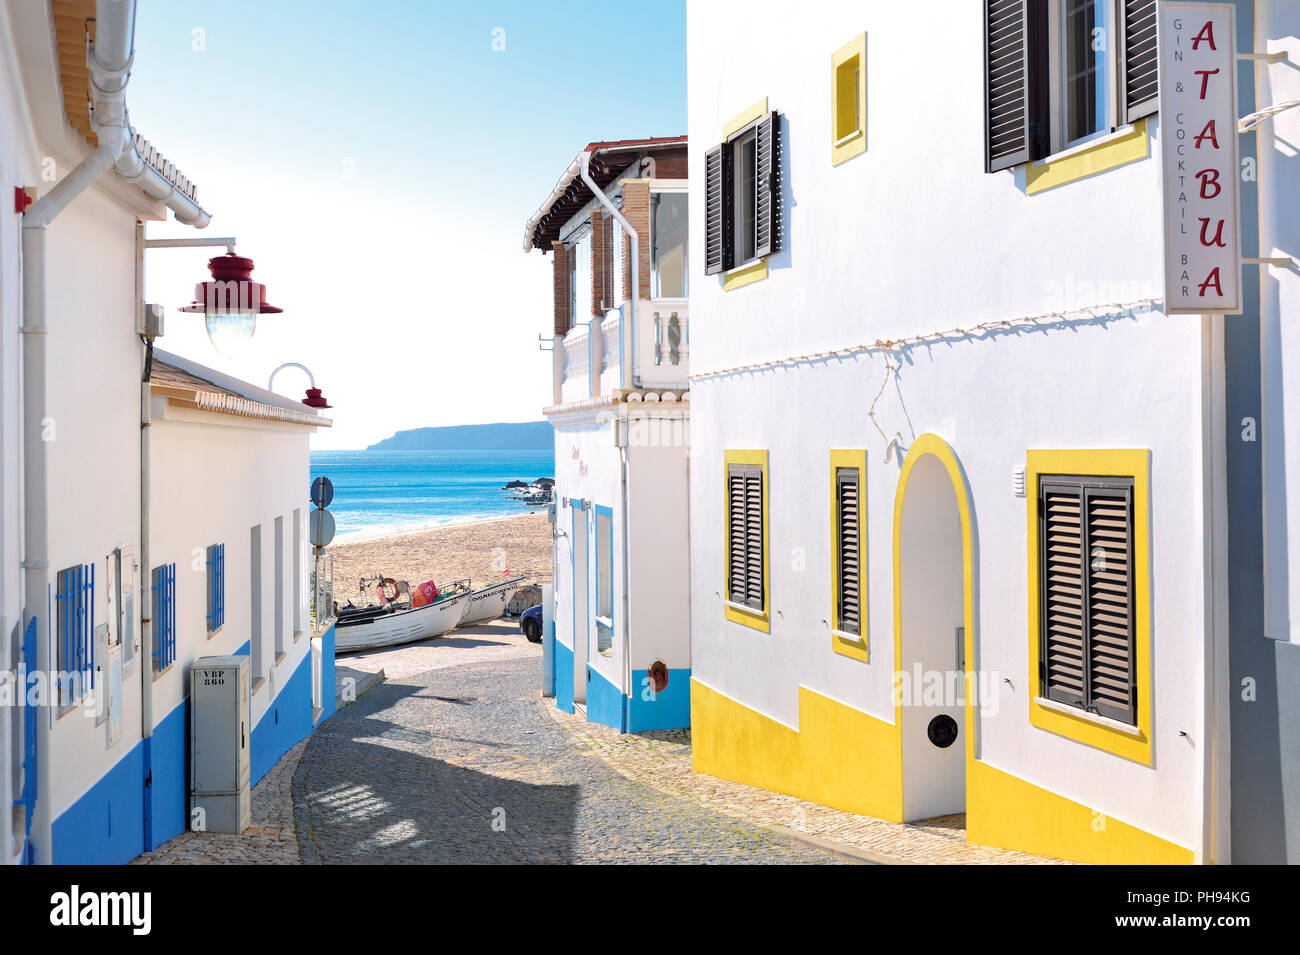 Petite ruelle romantique aux maisons colorées menant à une plage de sable fin avec bateau de pêche et sur la mer Banque D'Images